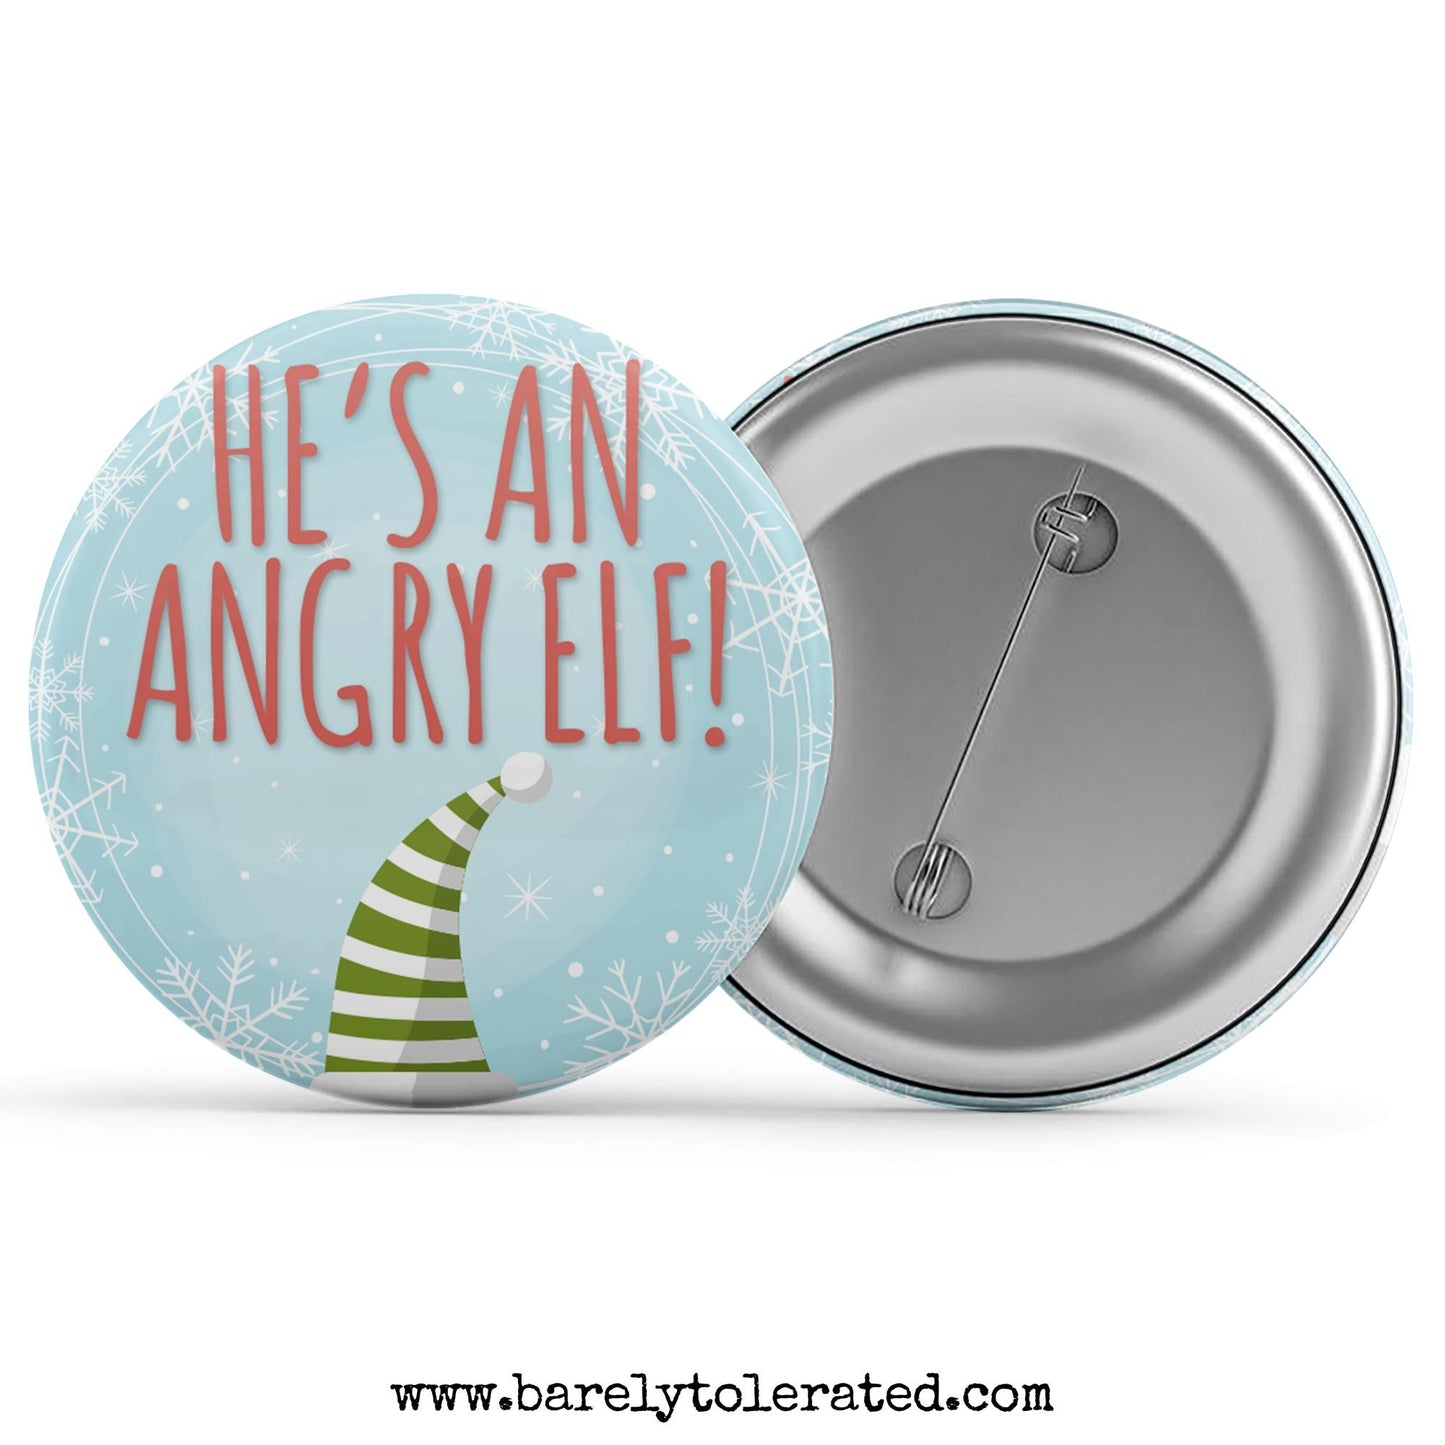 He's An Angry Elf! Image